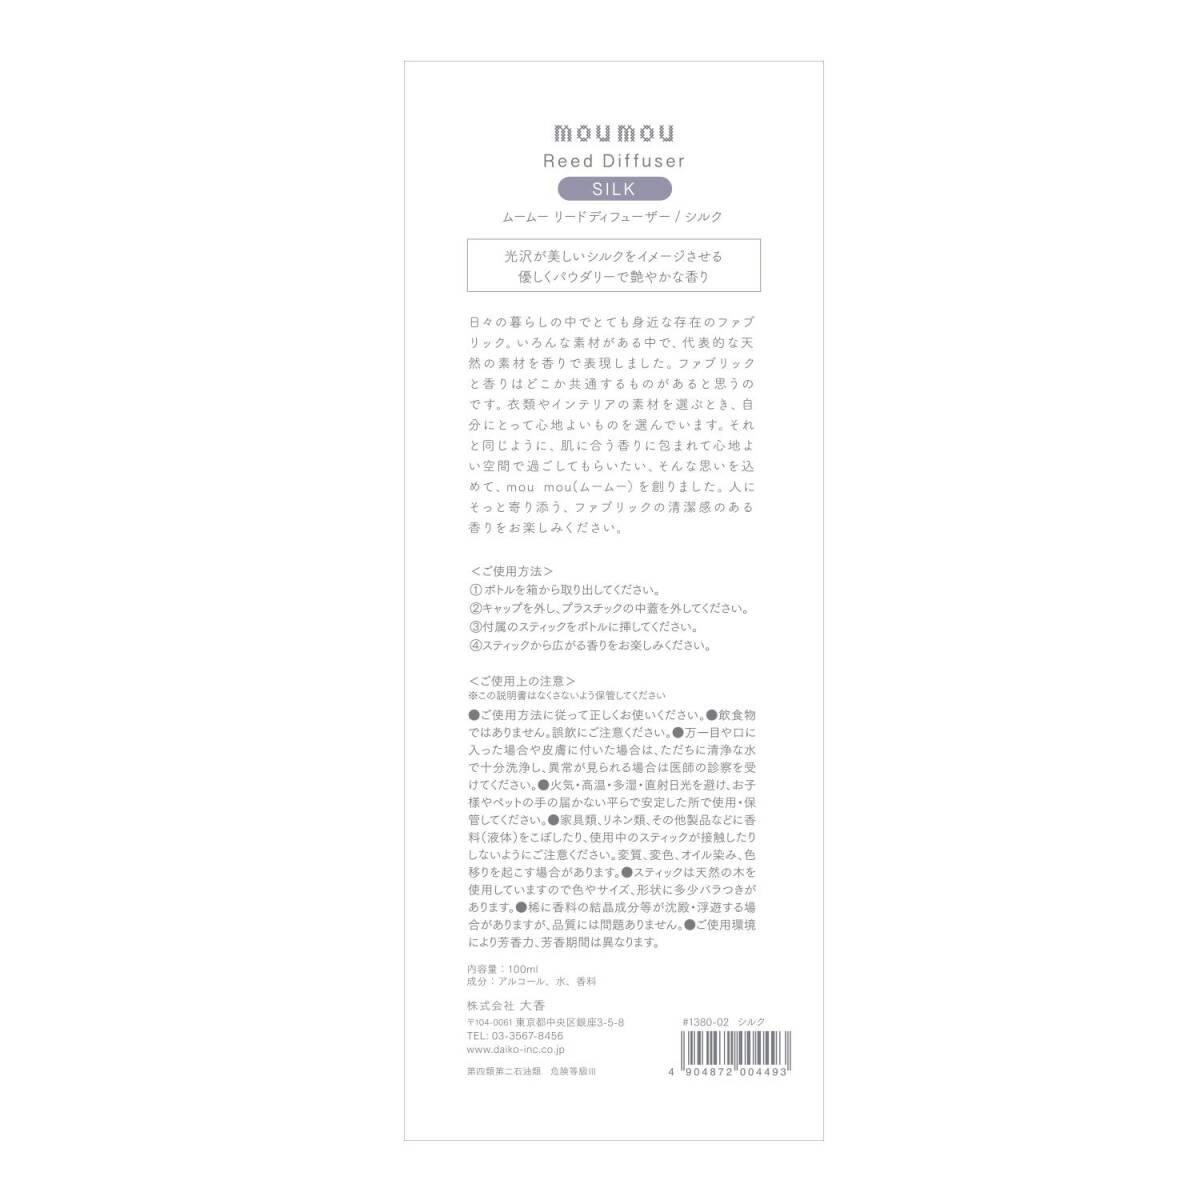 大香 moumou リードディフューザー シルク 7.2x6.1x25.5センチメートル (x 1)の画像2